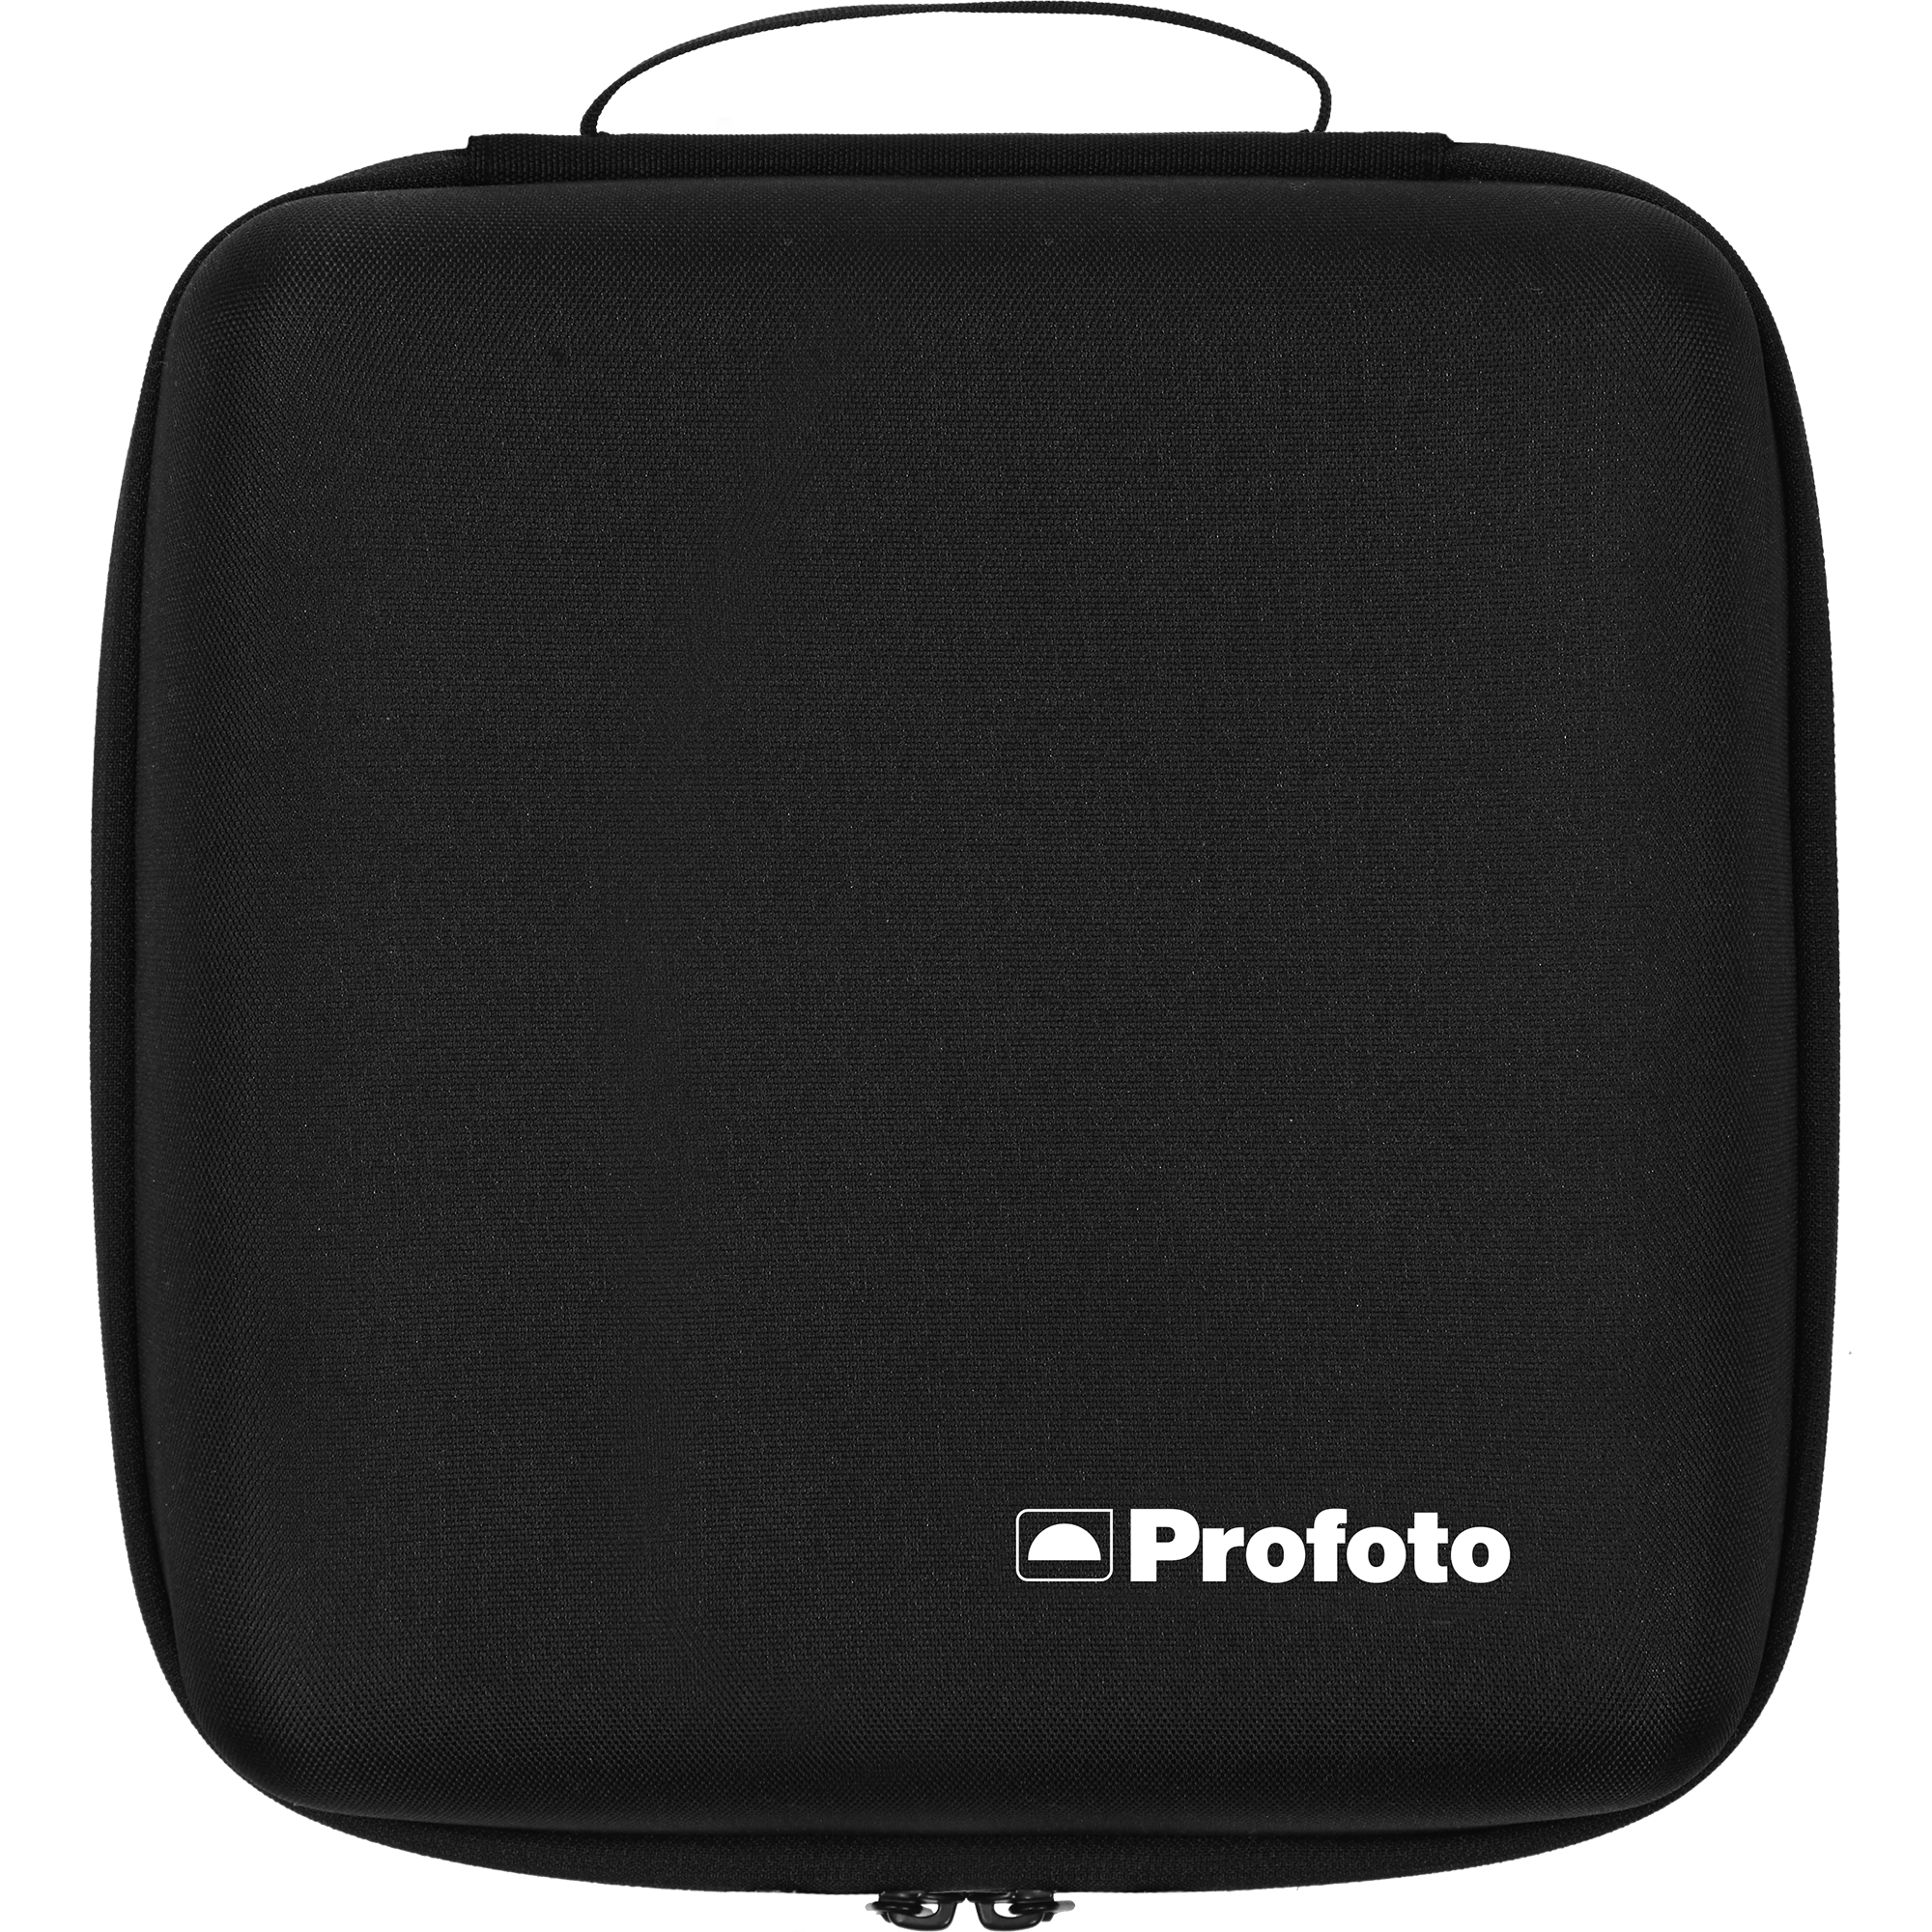 330242 A Profoto B10 Plus Case Front Product Image